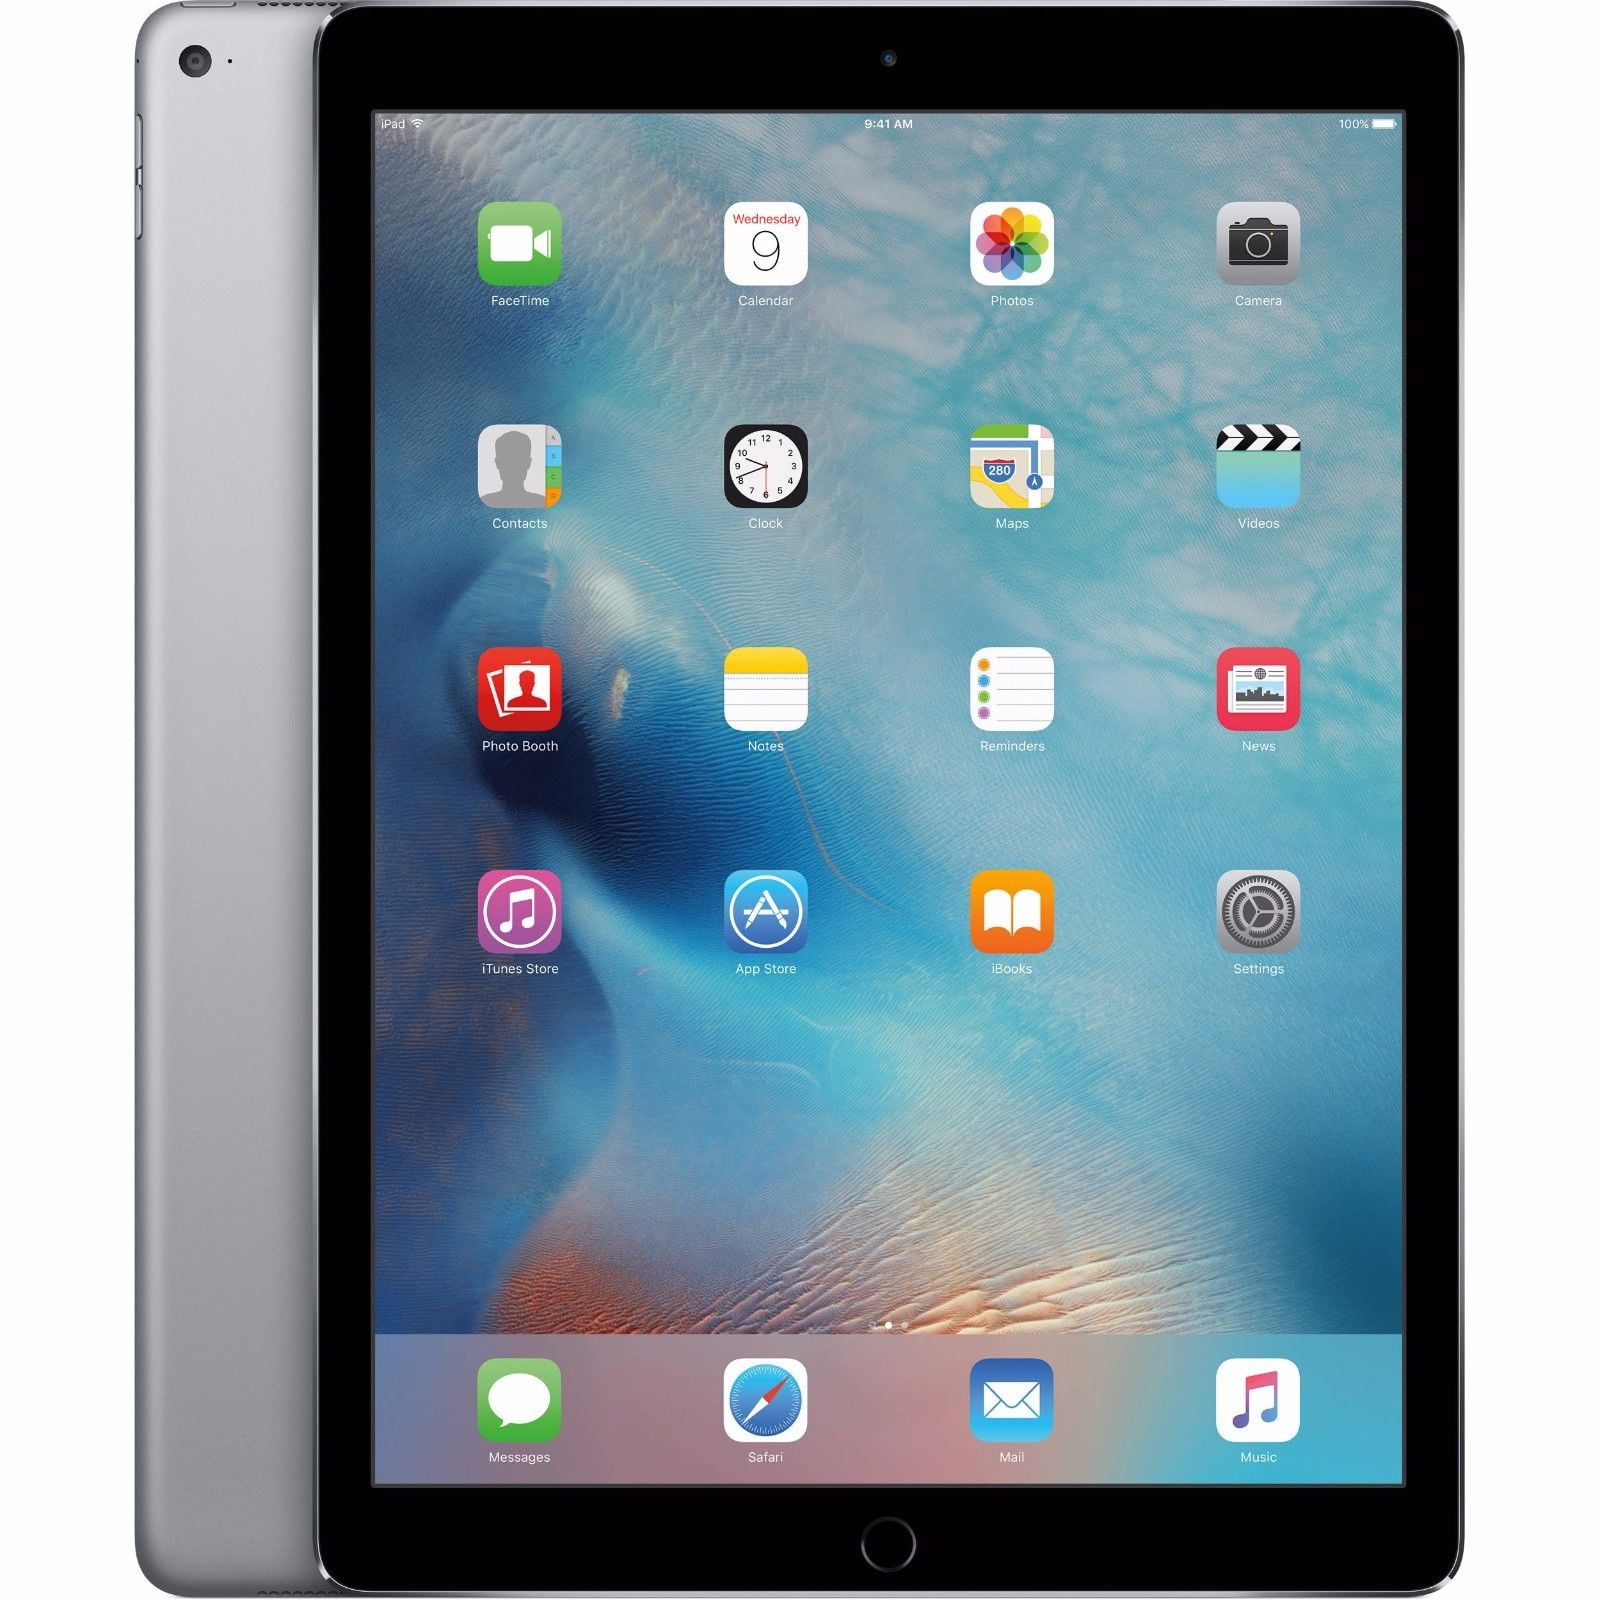 Apple iPad 5th Gen 128GB Wifi + Cellular Unlocked, 9.7in - Space Gray